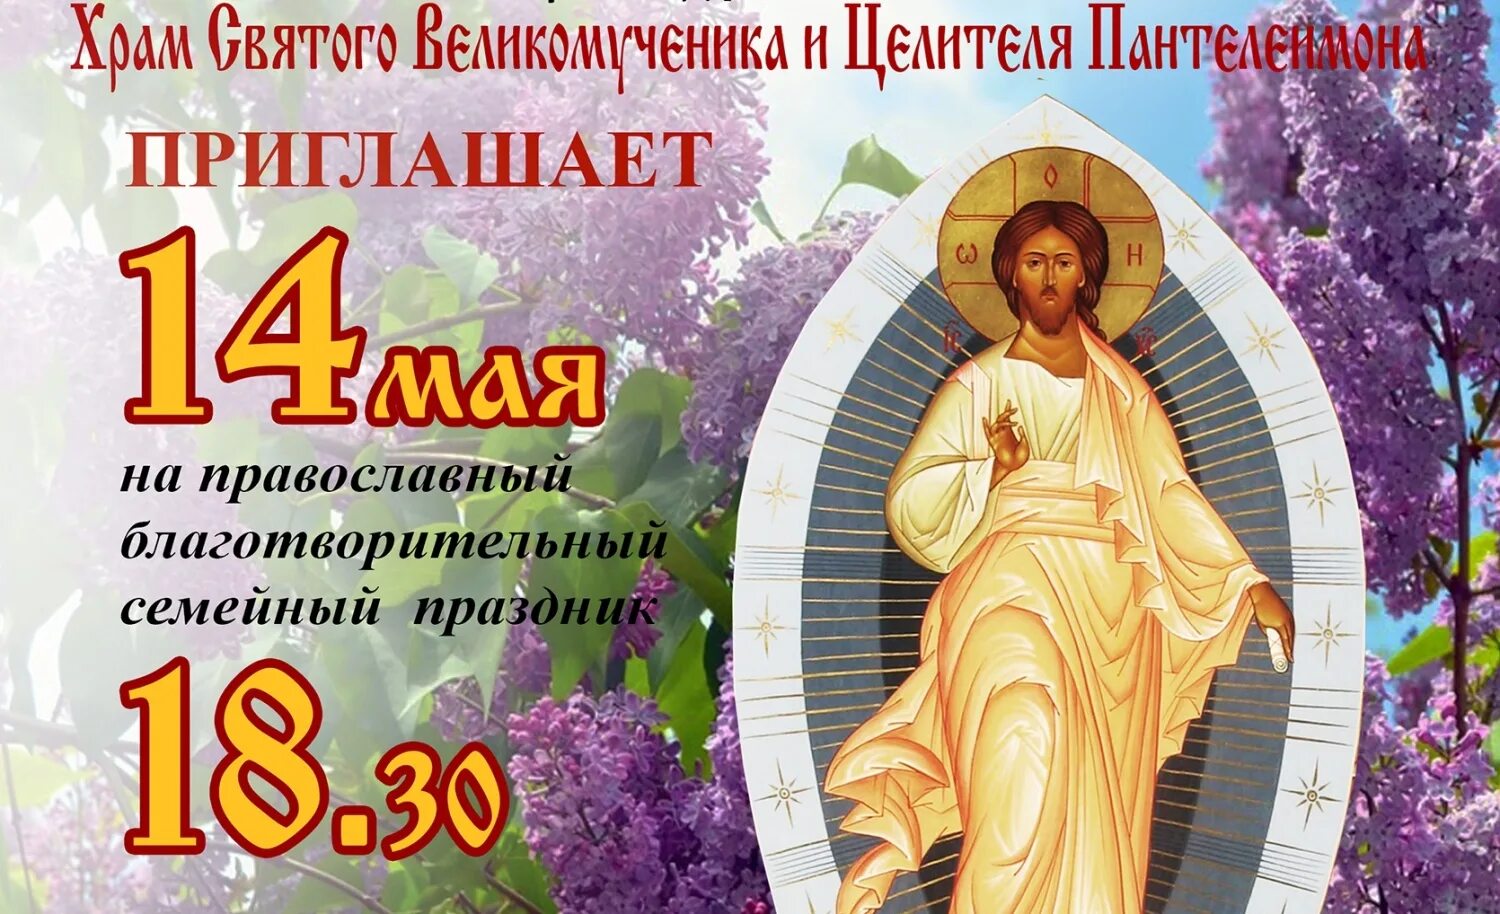 14 мая православный праздник